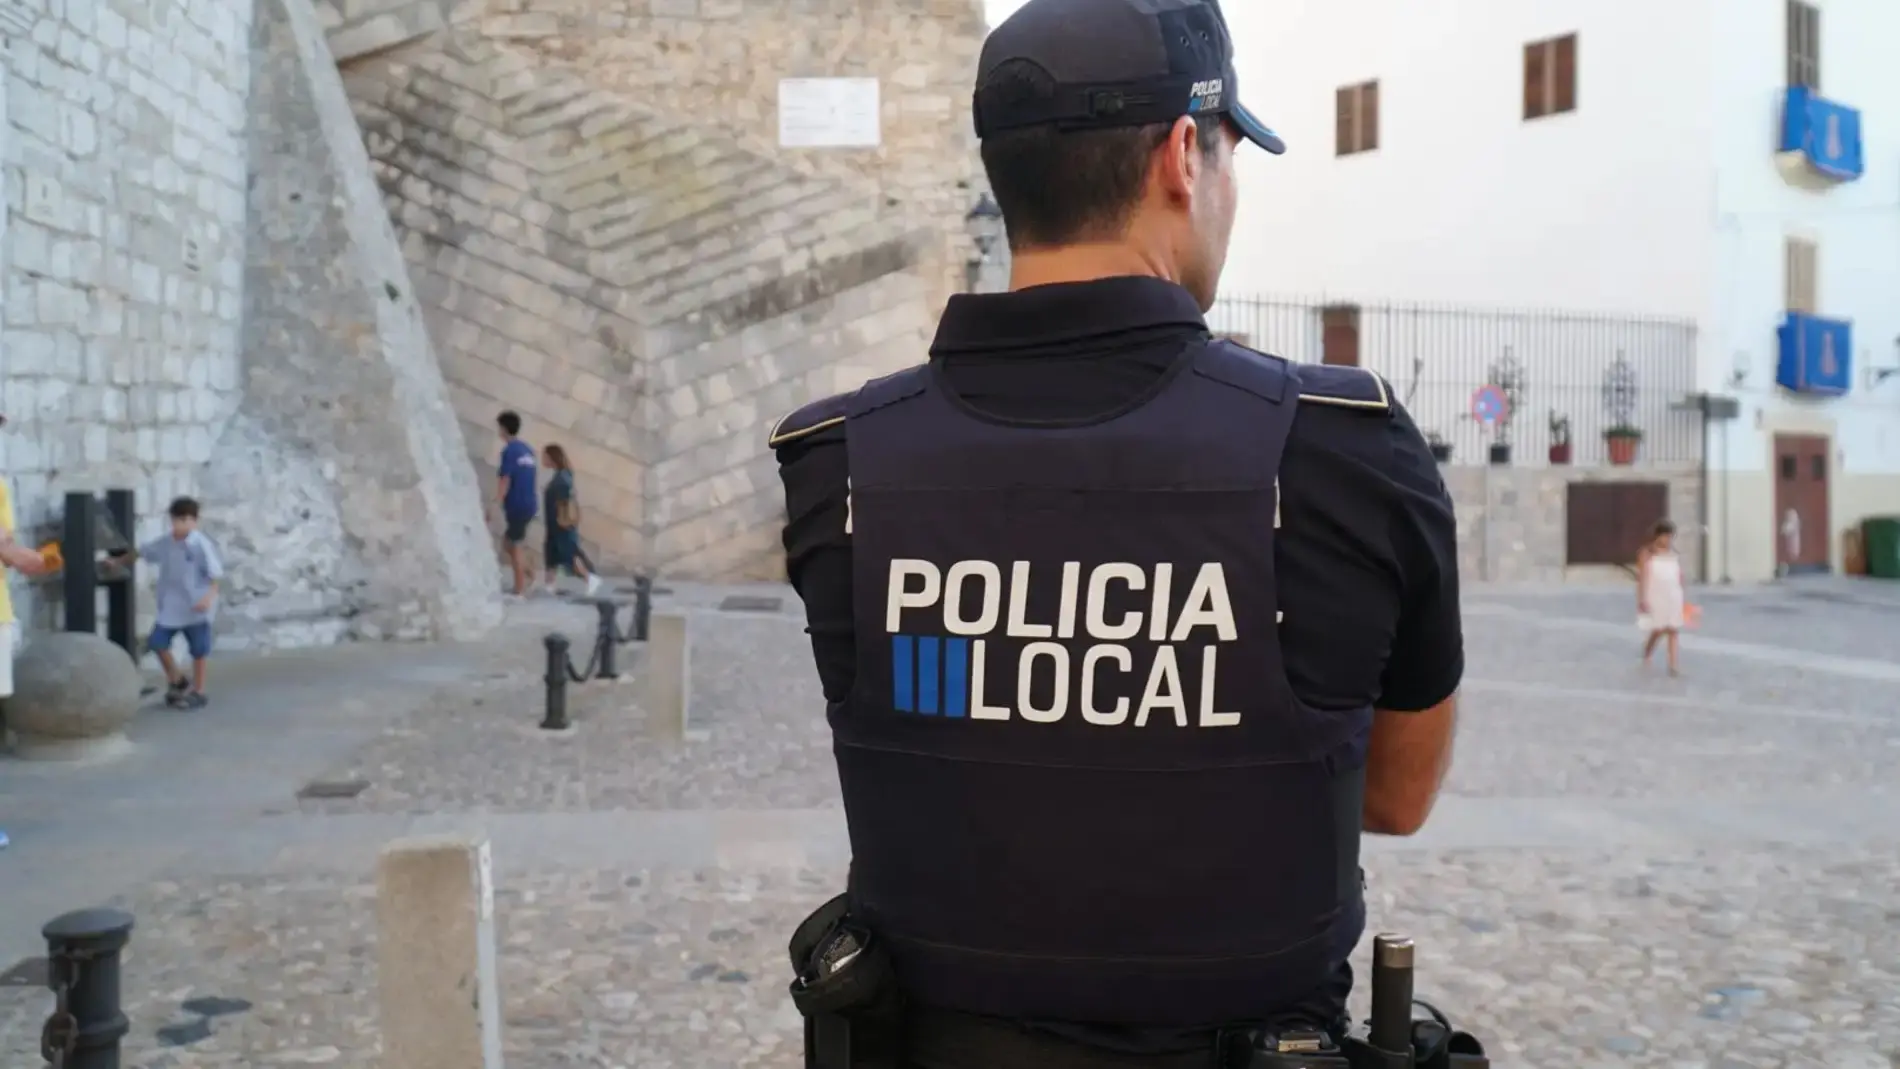 La Policía Local de Ibiza denuncia a cinco taxis por aplicar una tarifa incorrecta y cobrar un suplemento ilegal 